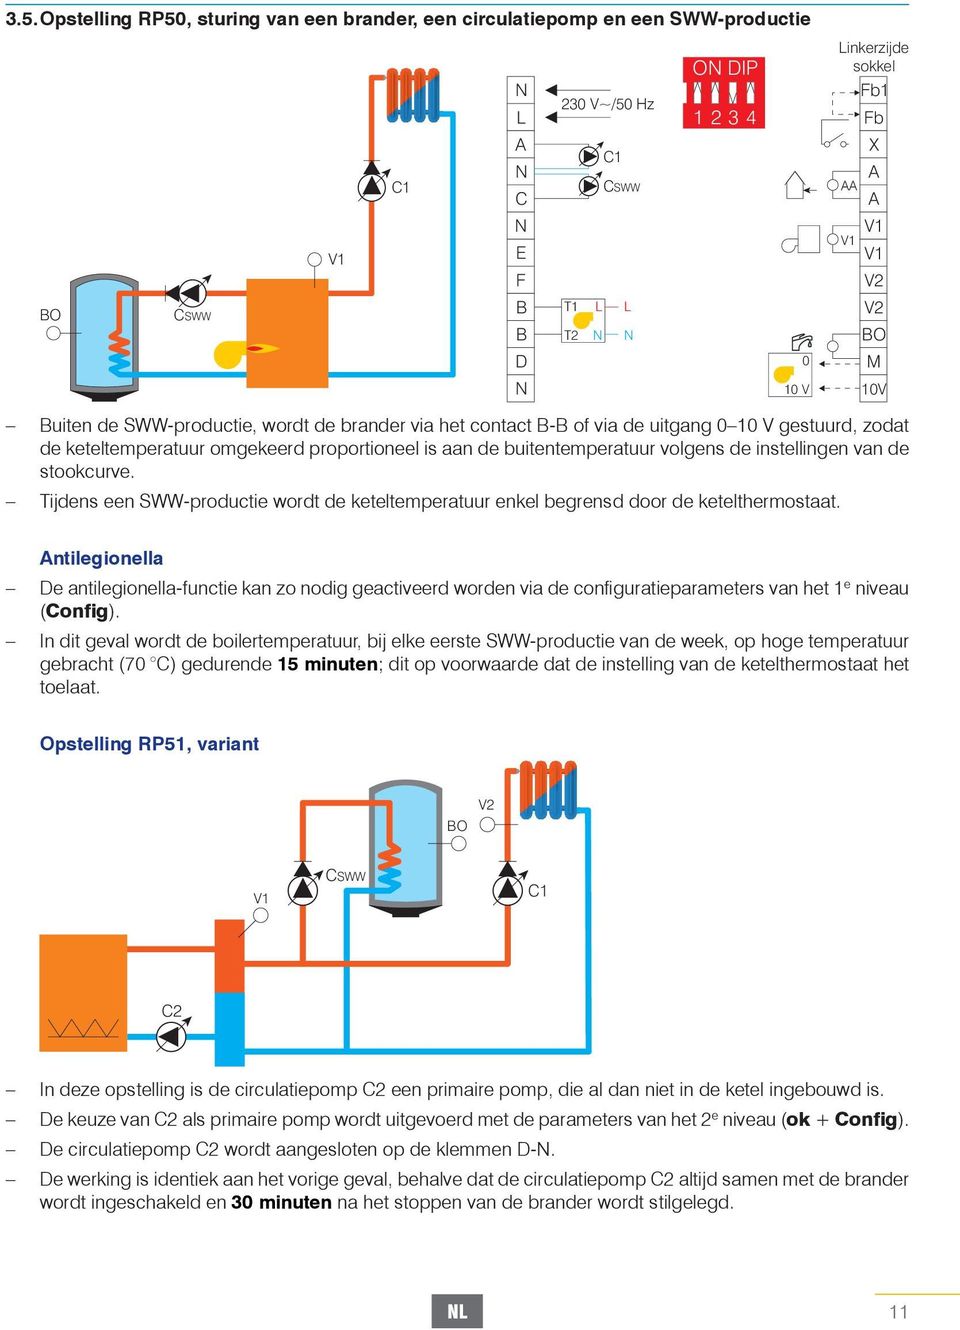 stookcurve. Tijdens een SWW-productie wordt de keteltemperatuur enkel begrensd door de ketelthermostaat.